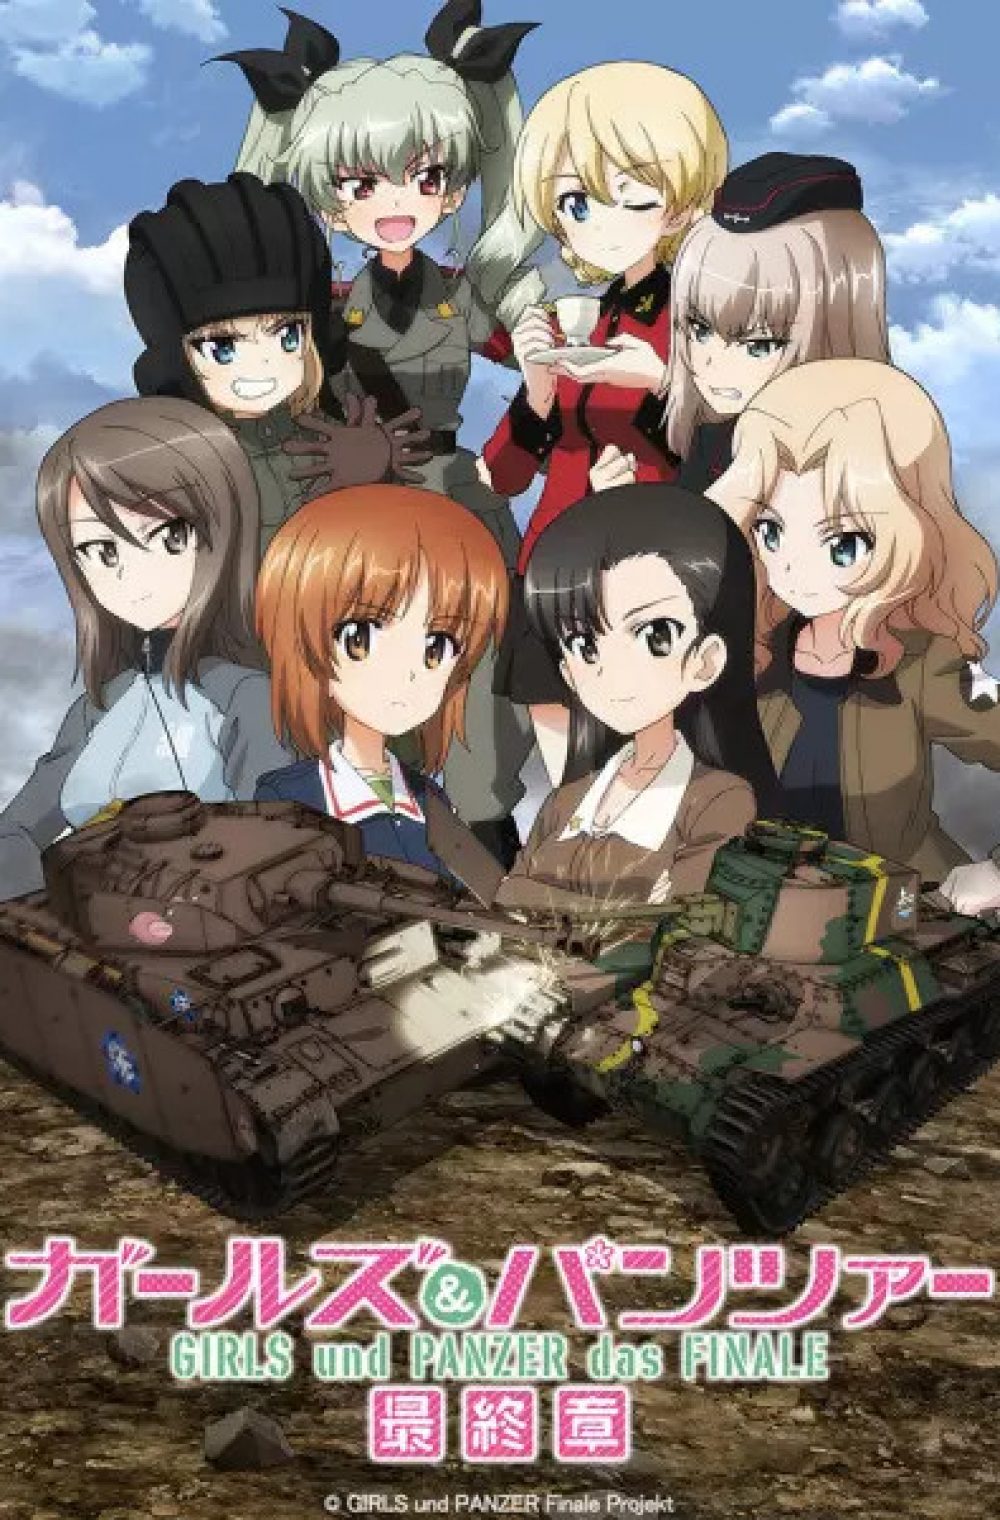 Girls und Panzer das Finale Part 3 + Special